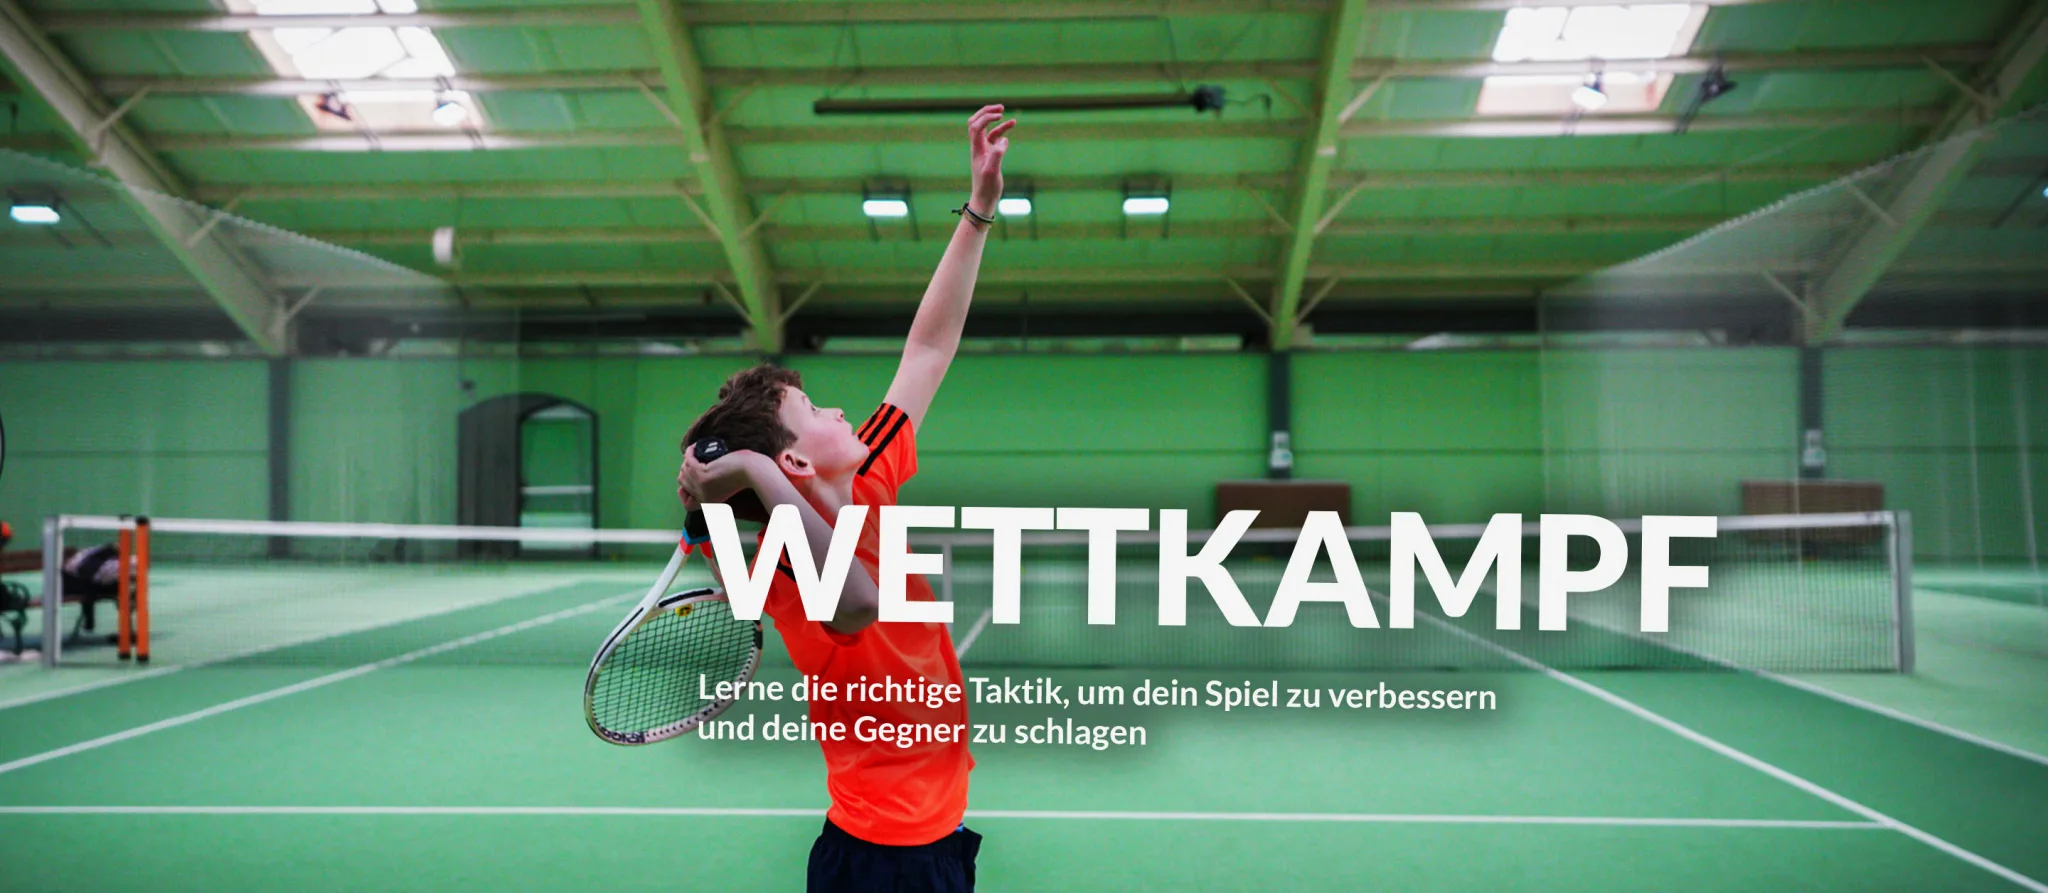 Jugendtennistraining_Tenniscamp_Tennistraining_Wien_tennisspass